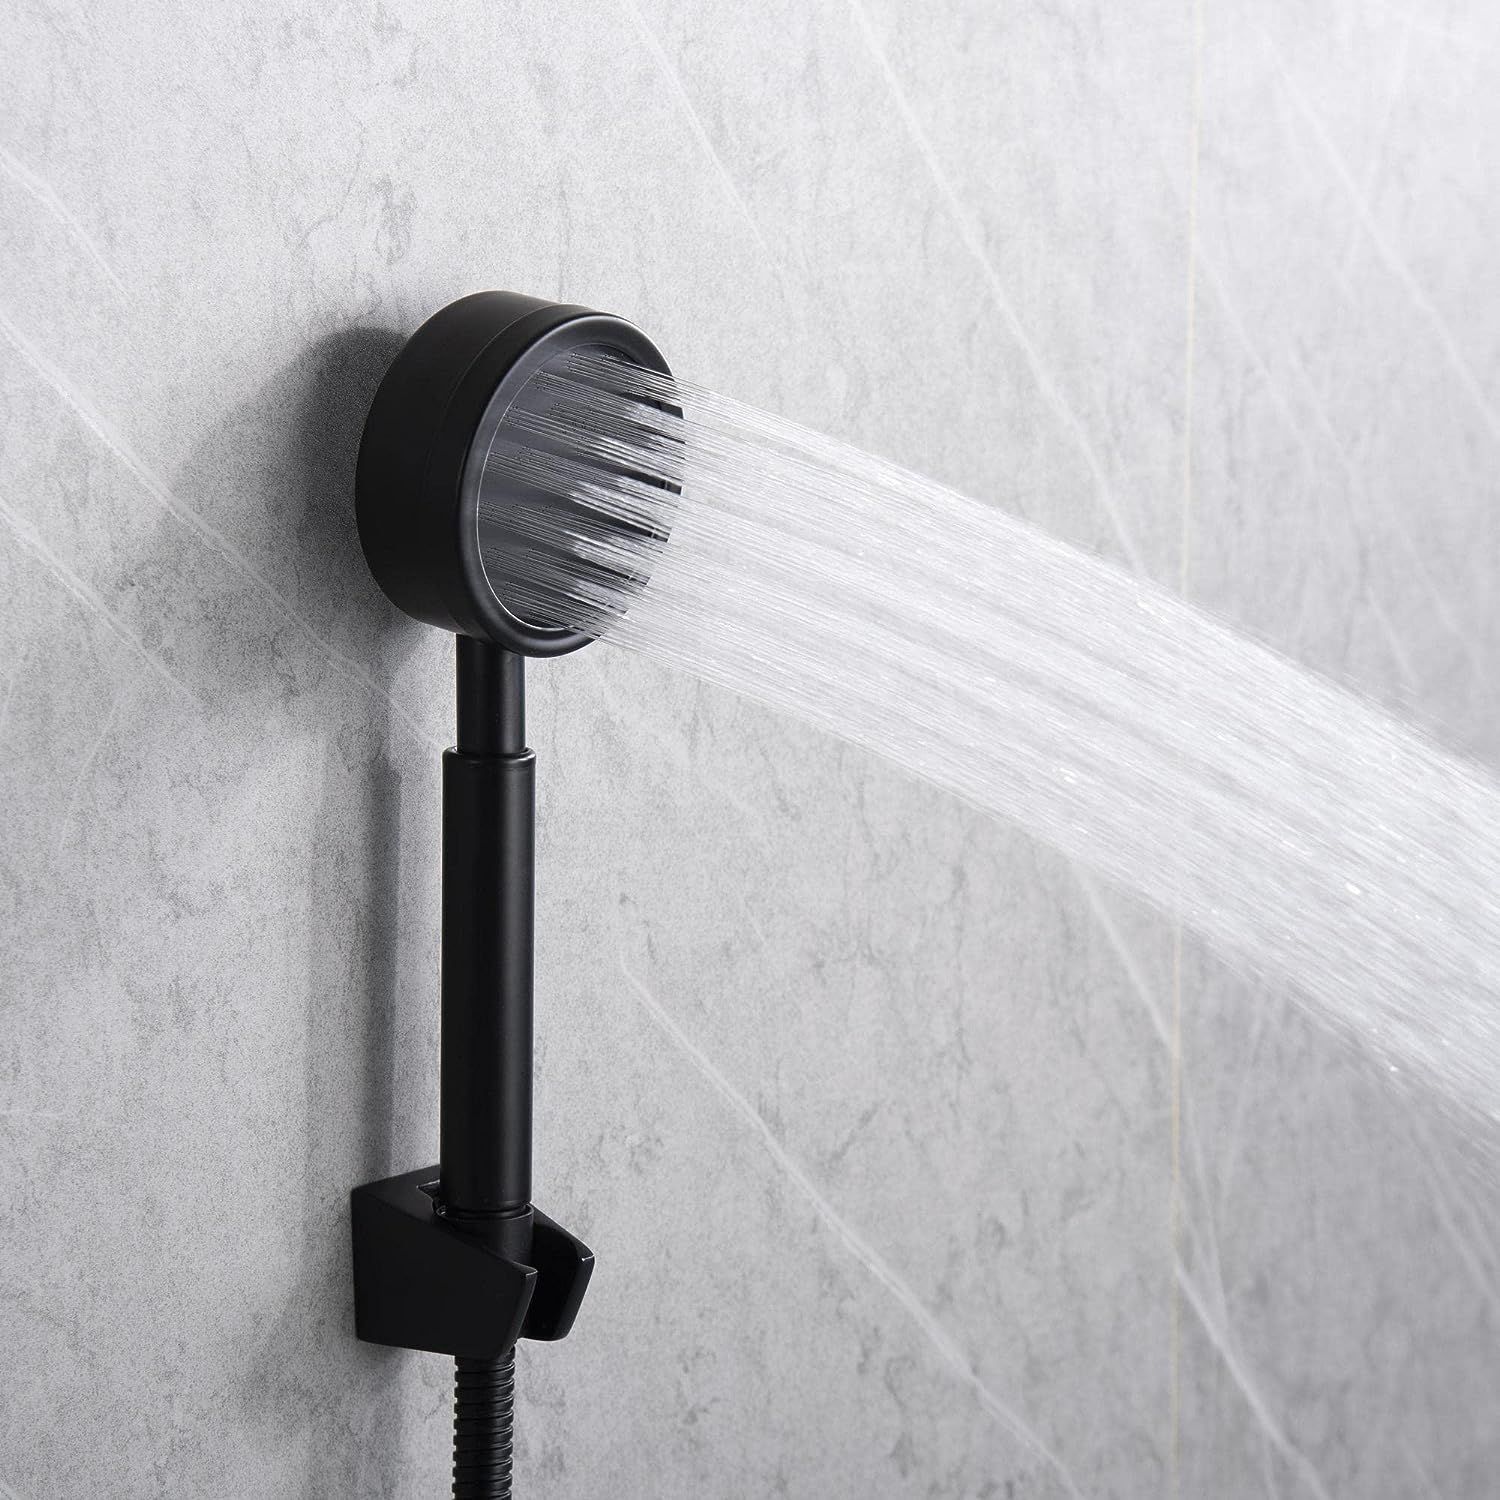 新品 Hefo 浴室用水栓 混合栓 シャワー シャワー水栓 水圧極細水流